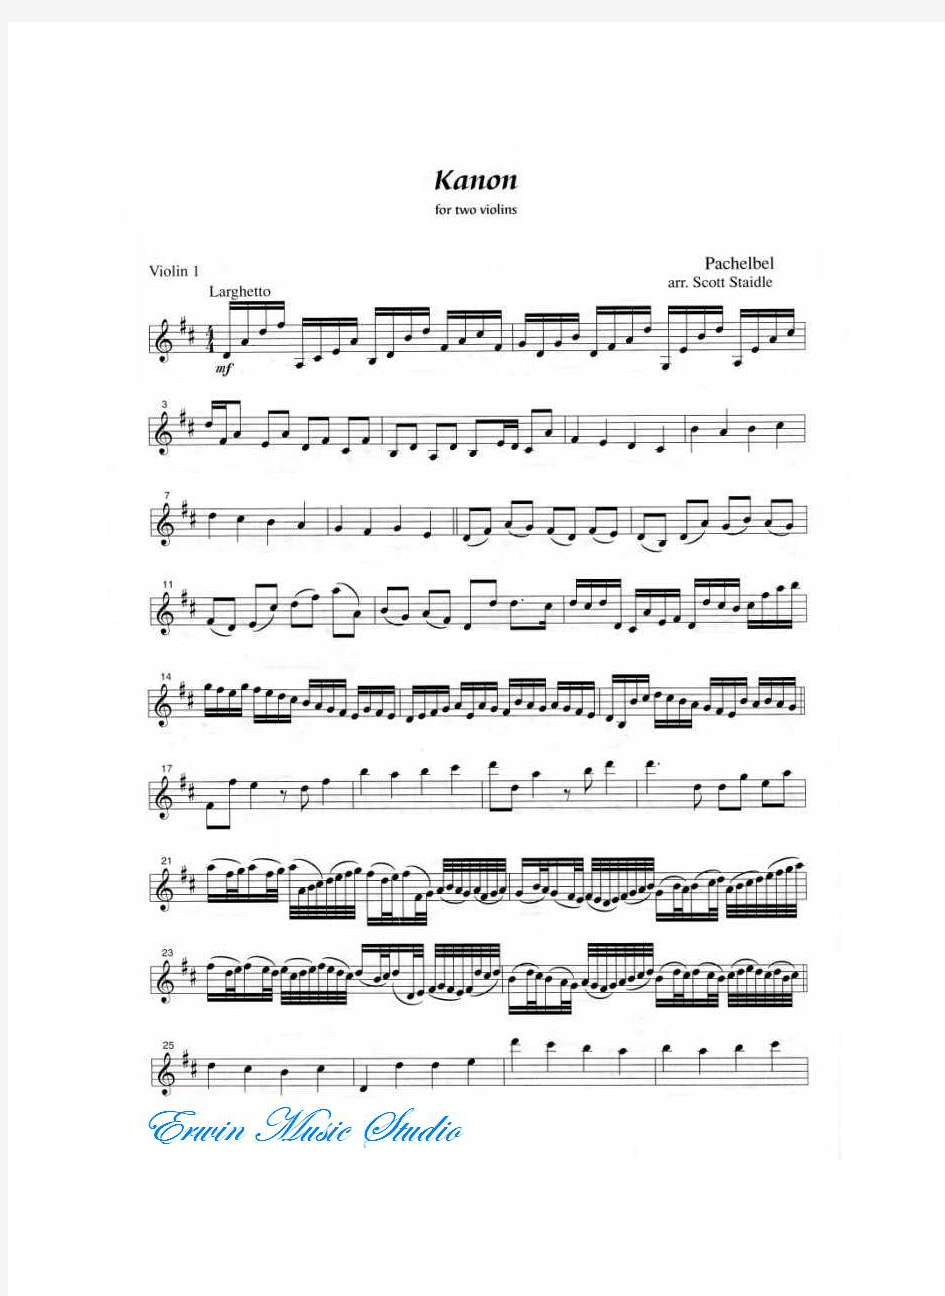 ViolinIJ.PACHELBELKANON(1)